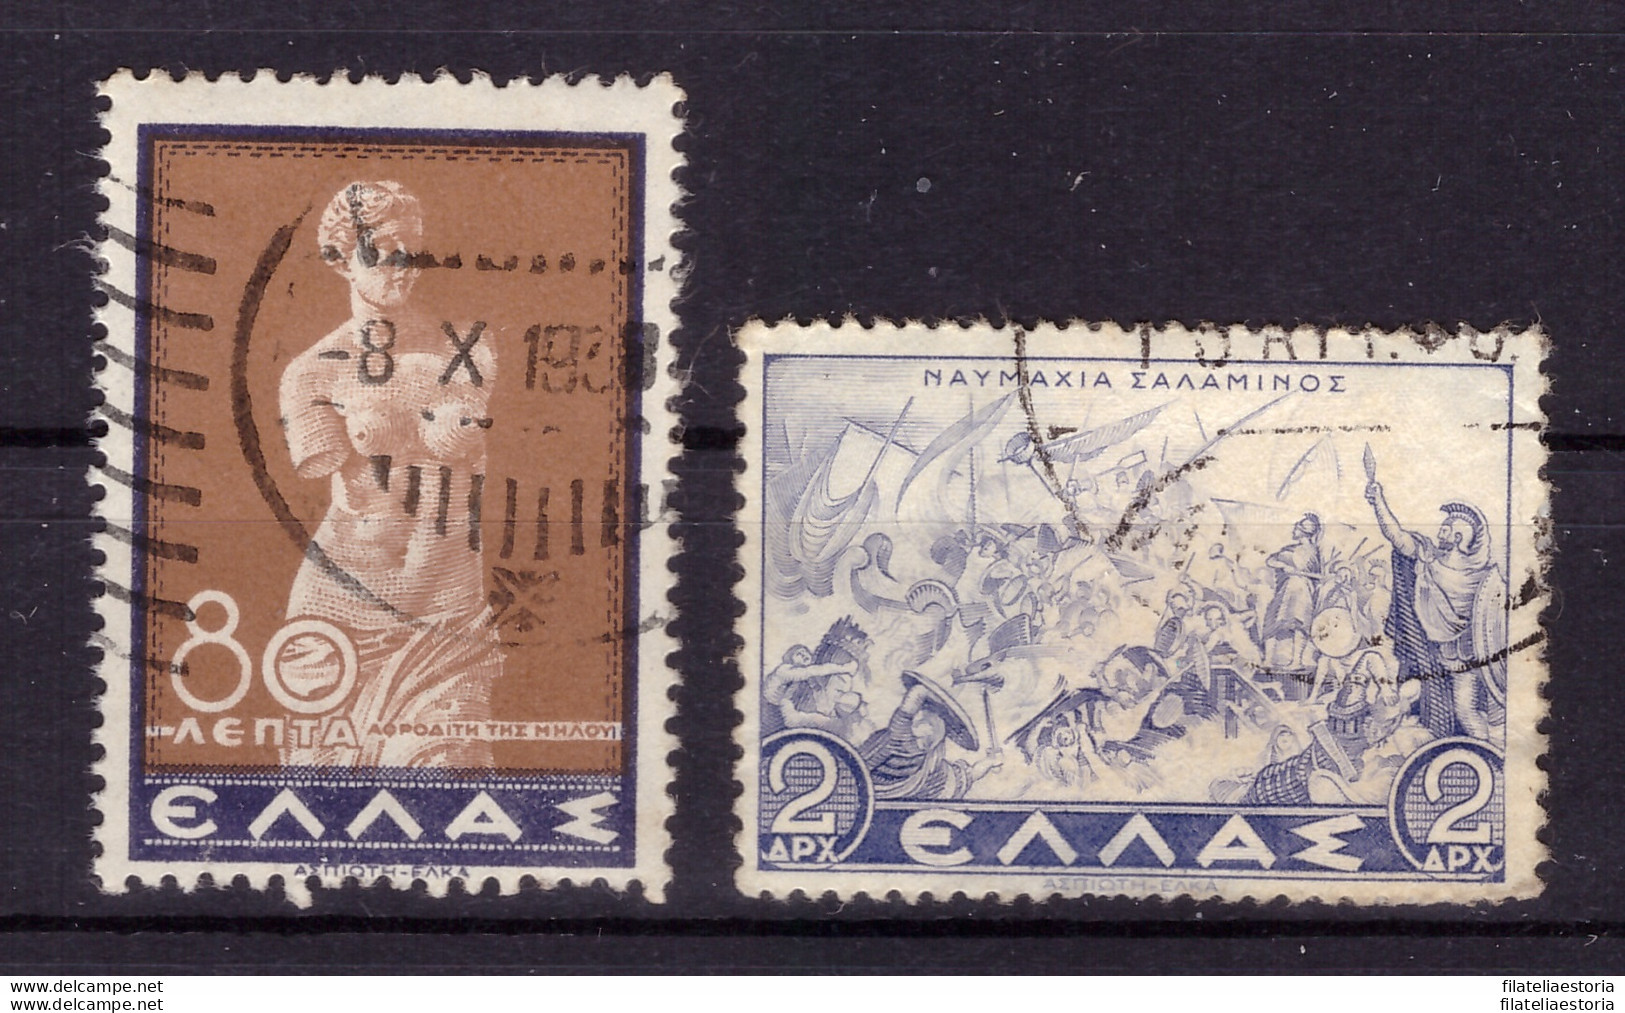 Grèce 1937 - Oblitéré - Sculpture - Peinture - Militaria - Michel Nr. 400-401 (gre1014) - Usados